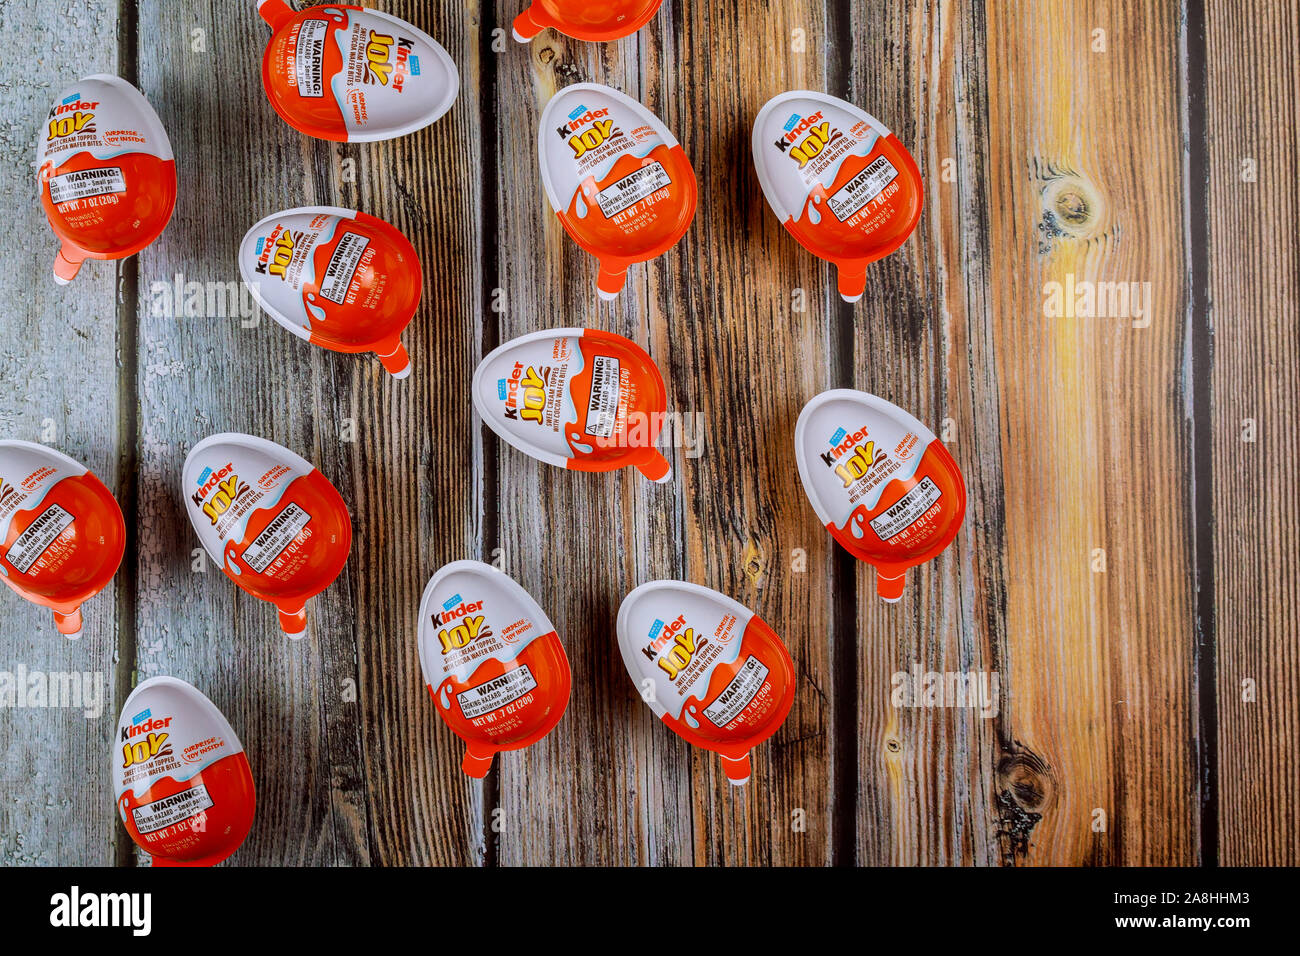 New York NY NOV 08 2019:Kinder sorpresa le uova sulla vecchia sullo sfondo di legno. La parola scritta a sorpresa in fabbricati dalla società italiana Ferrero. Foto Stock